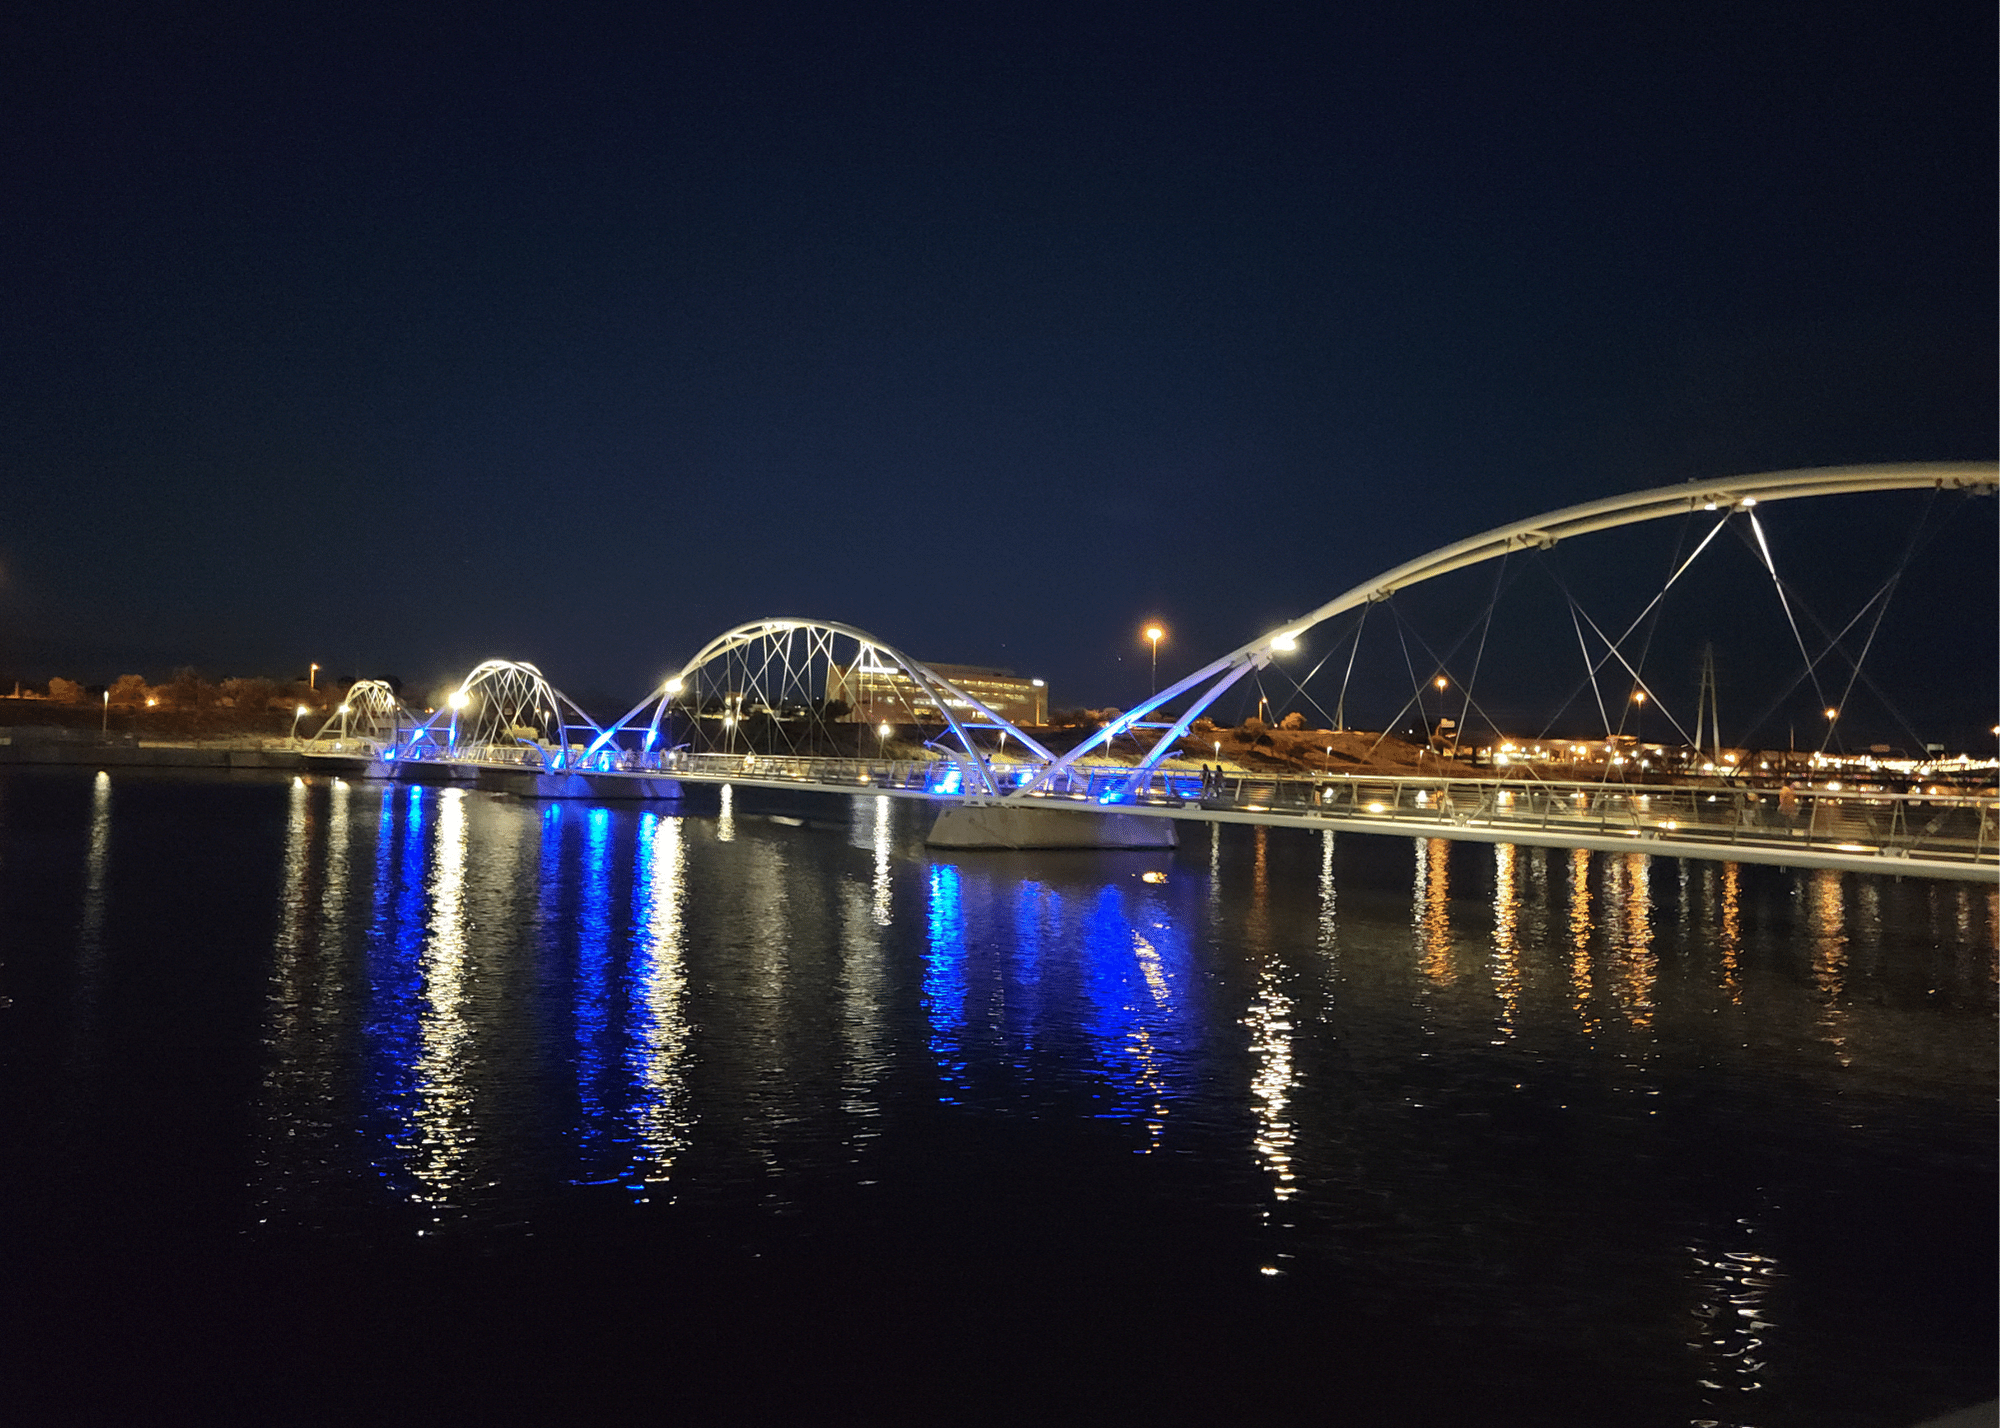 Elemore Pedestrian Bridge at Tempe Town Lake lit up at night